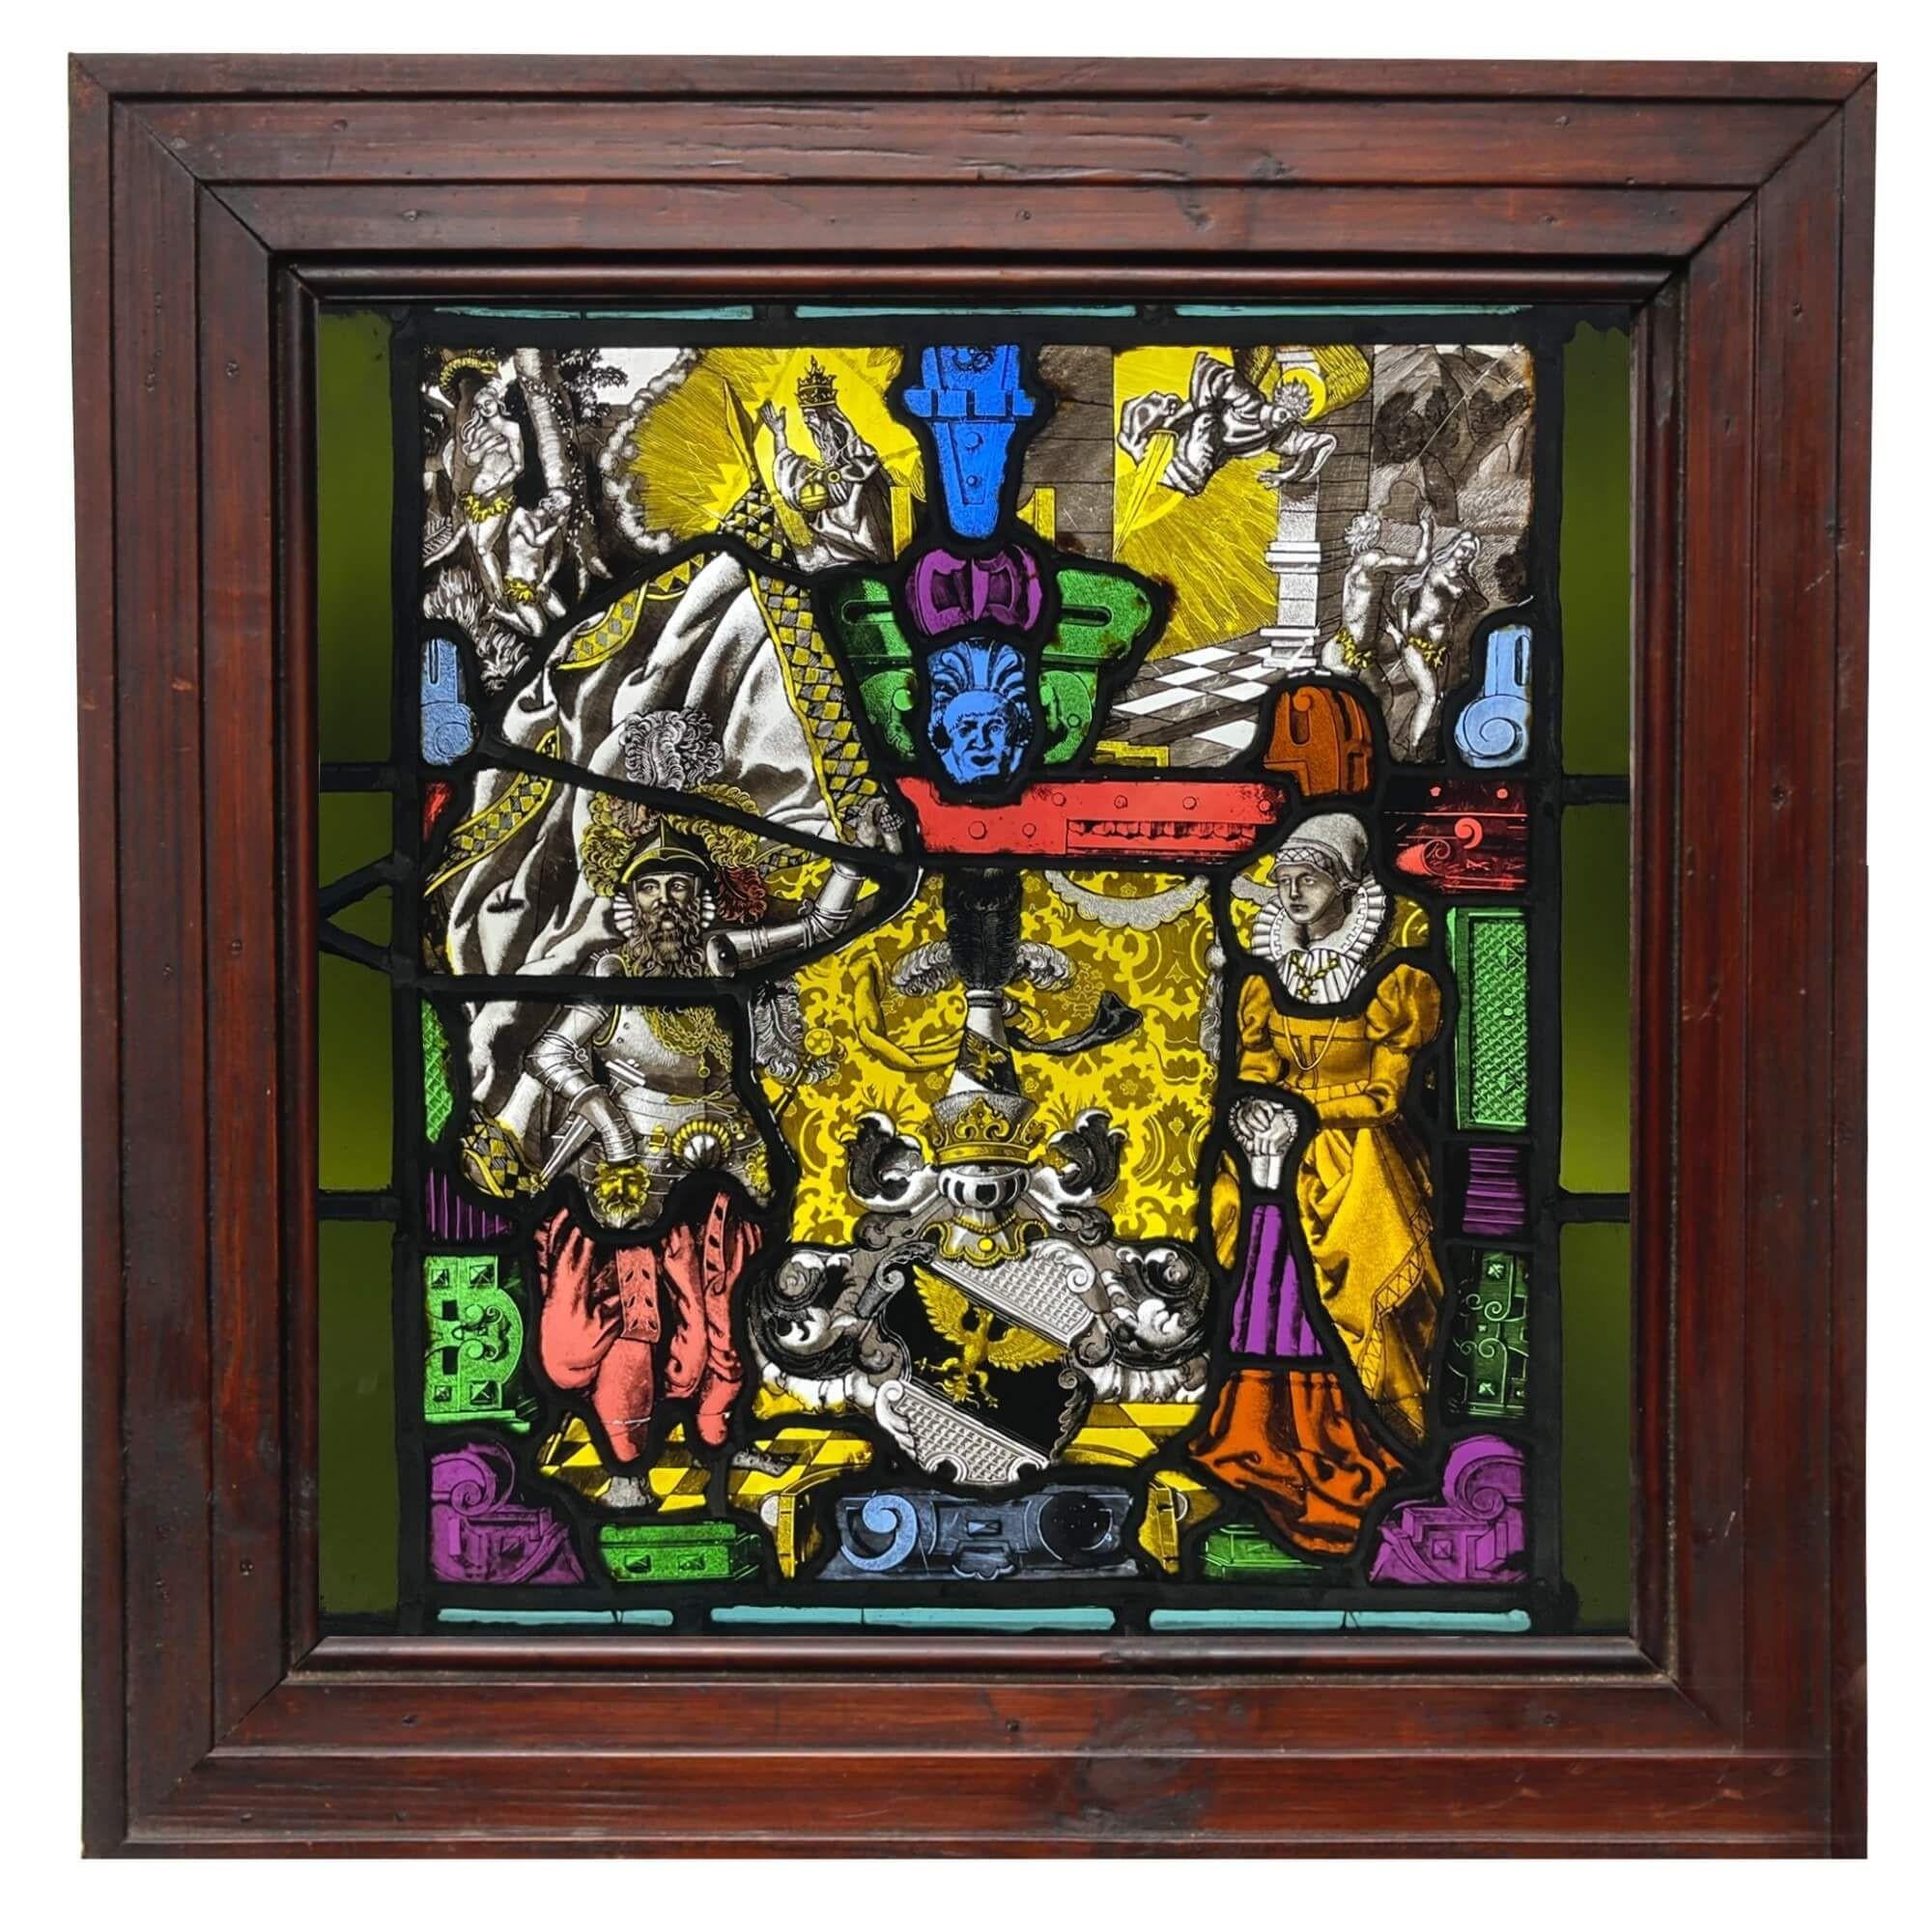 Ein deutsches antikes Glasfenster aus der Mitte des 19. Jahrhunderts, das eine außergewöhnlich detaillierte und farbenfrohe Szene mit heraldischen und kirchlichen Themen darstellt. Im Mittelpunkt der Gestaltung steht ein Wappen in der unteren